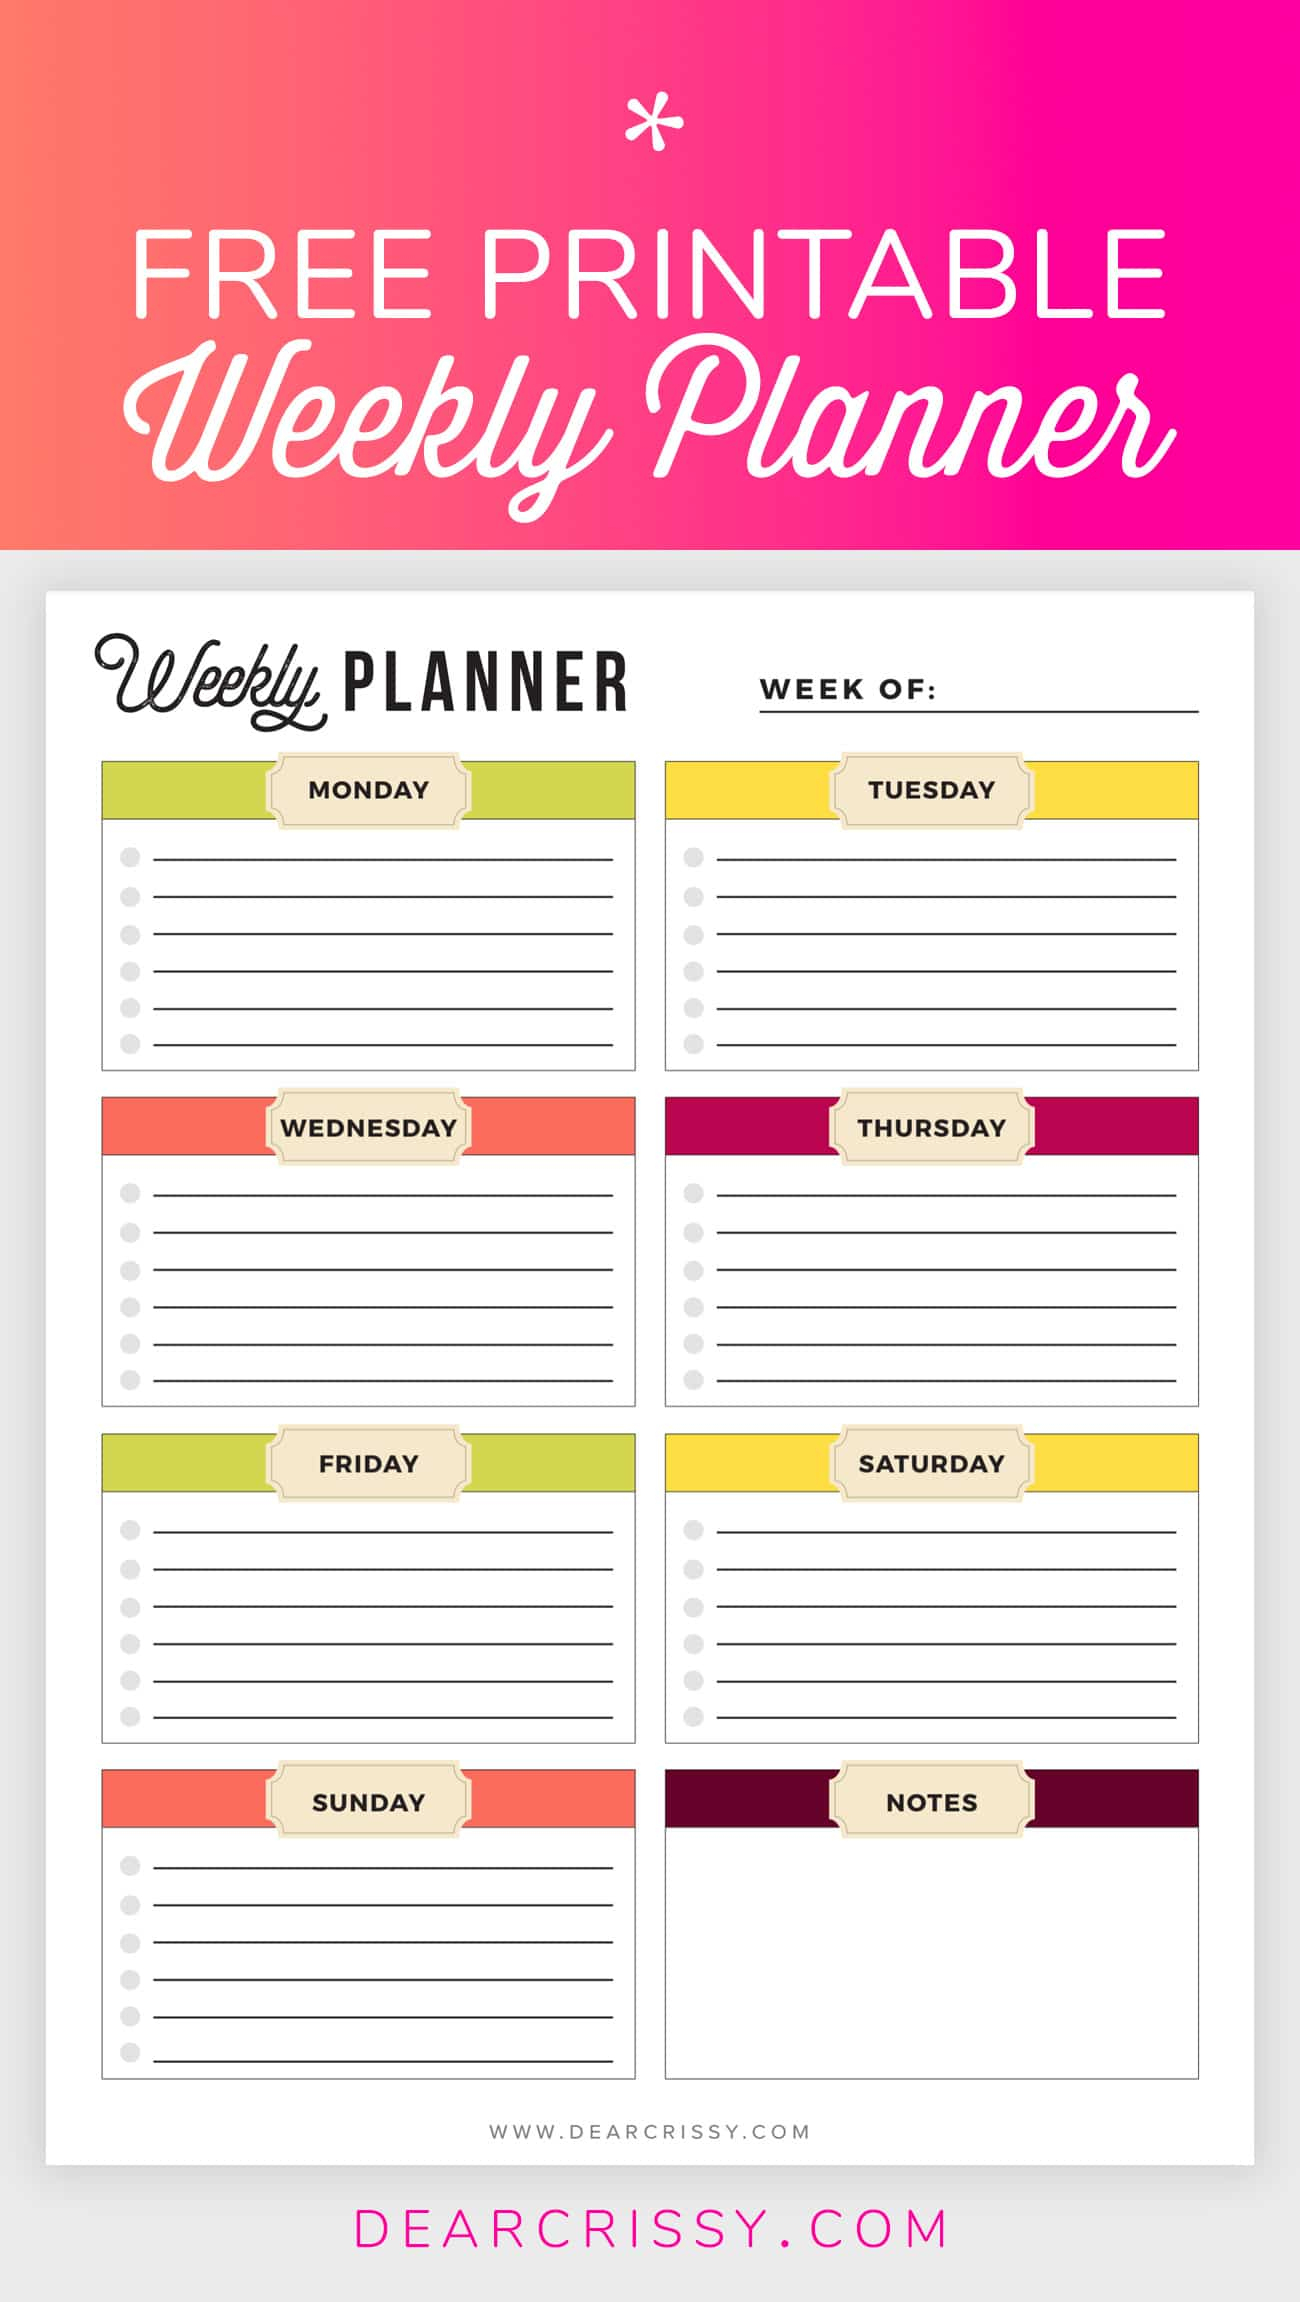 Free Printable Weekly Planner - Weekly Planner Printable! - Free Printable Weekly Planner